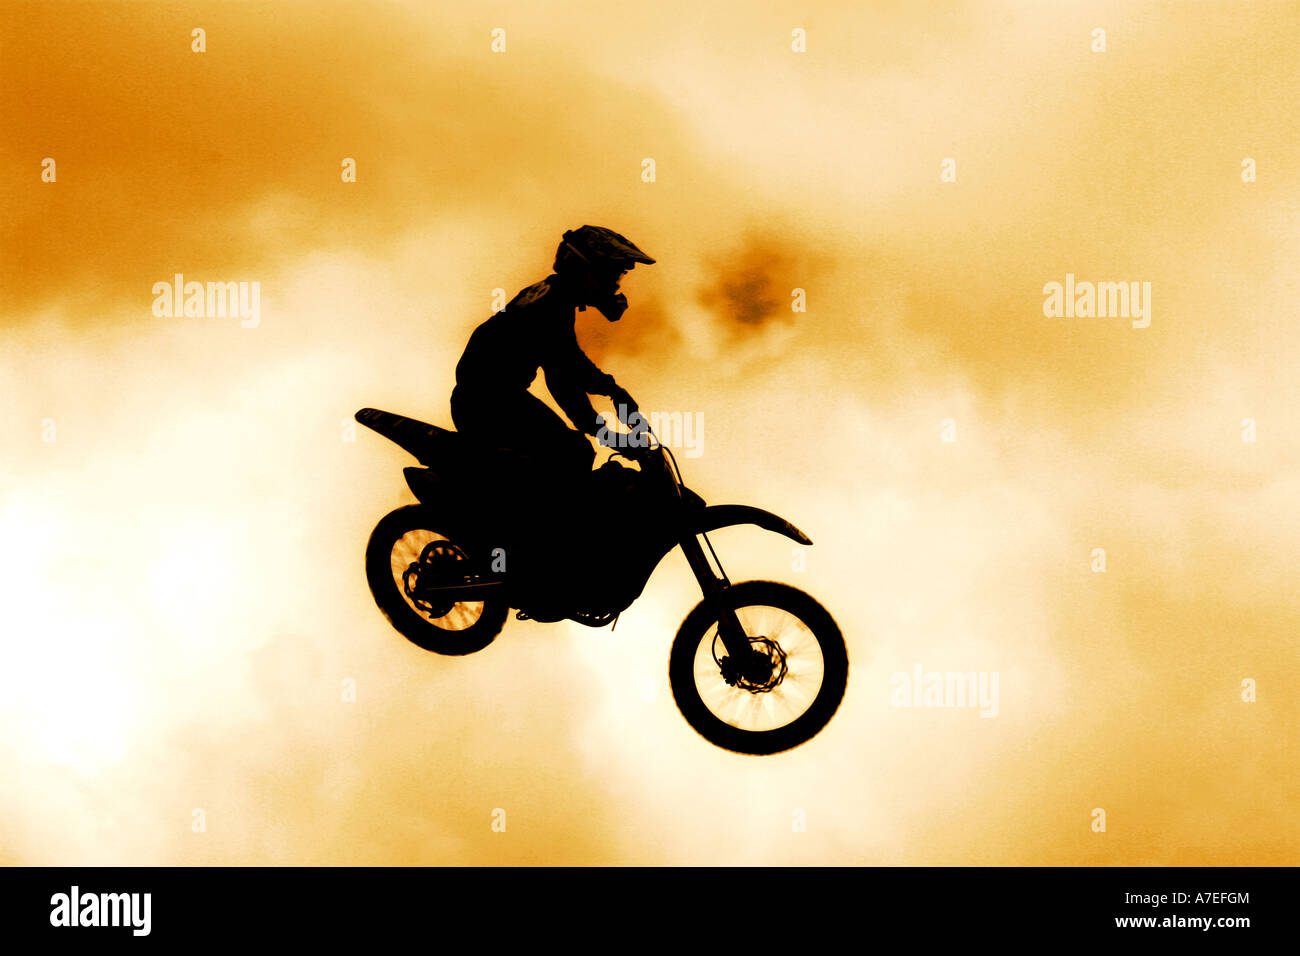 Wagen Sie Teufel Motocross Mann auf einen Sprung in der Luft - kein Release erforderlich als Person unkenntlich Motorrad Stockfoto